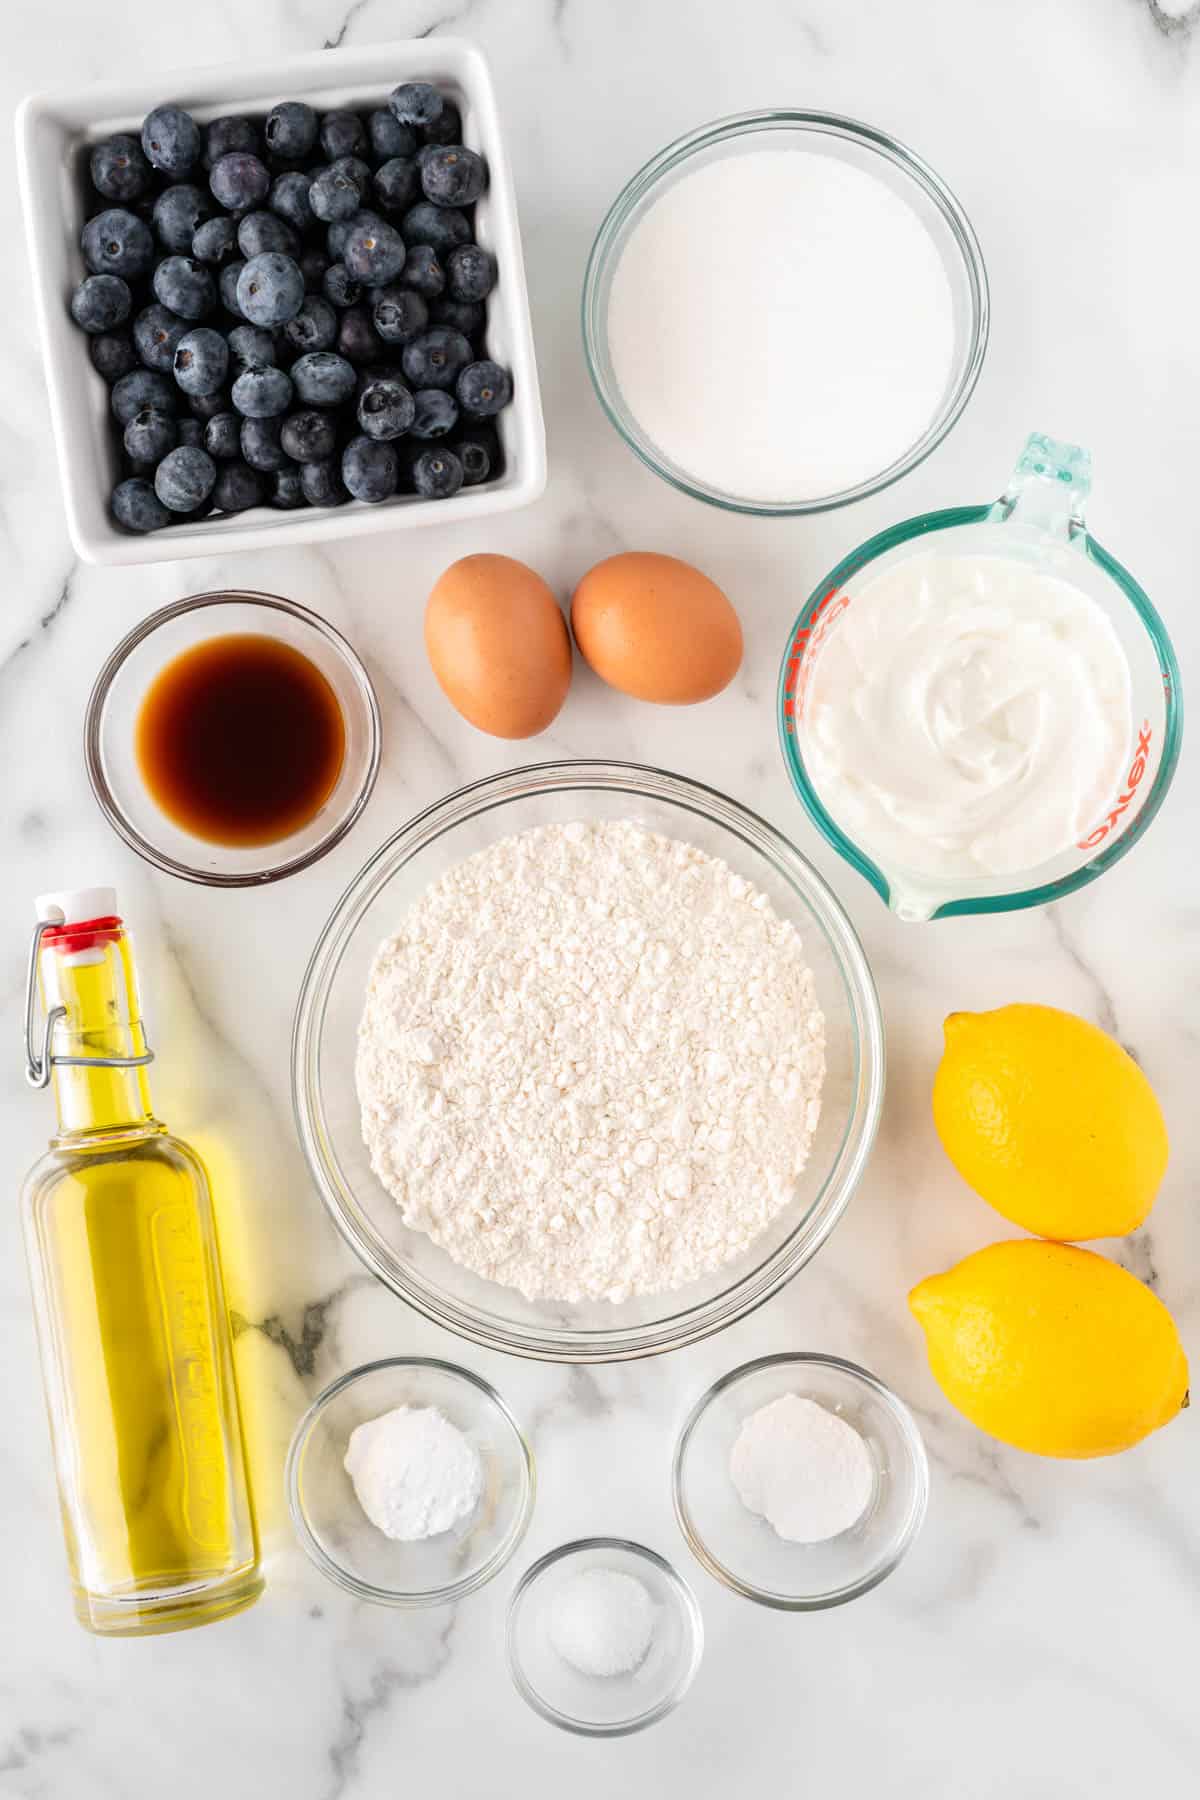 ingredients needed to make yogurt blueberry muffins